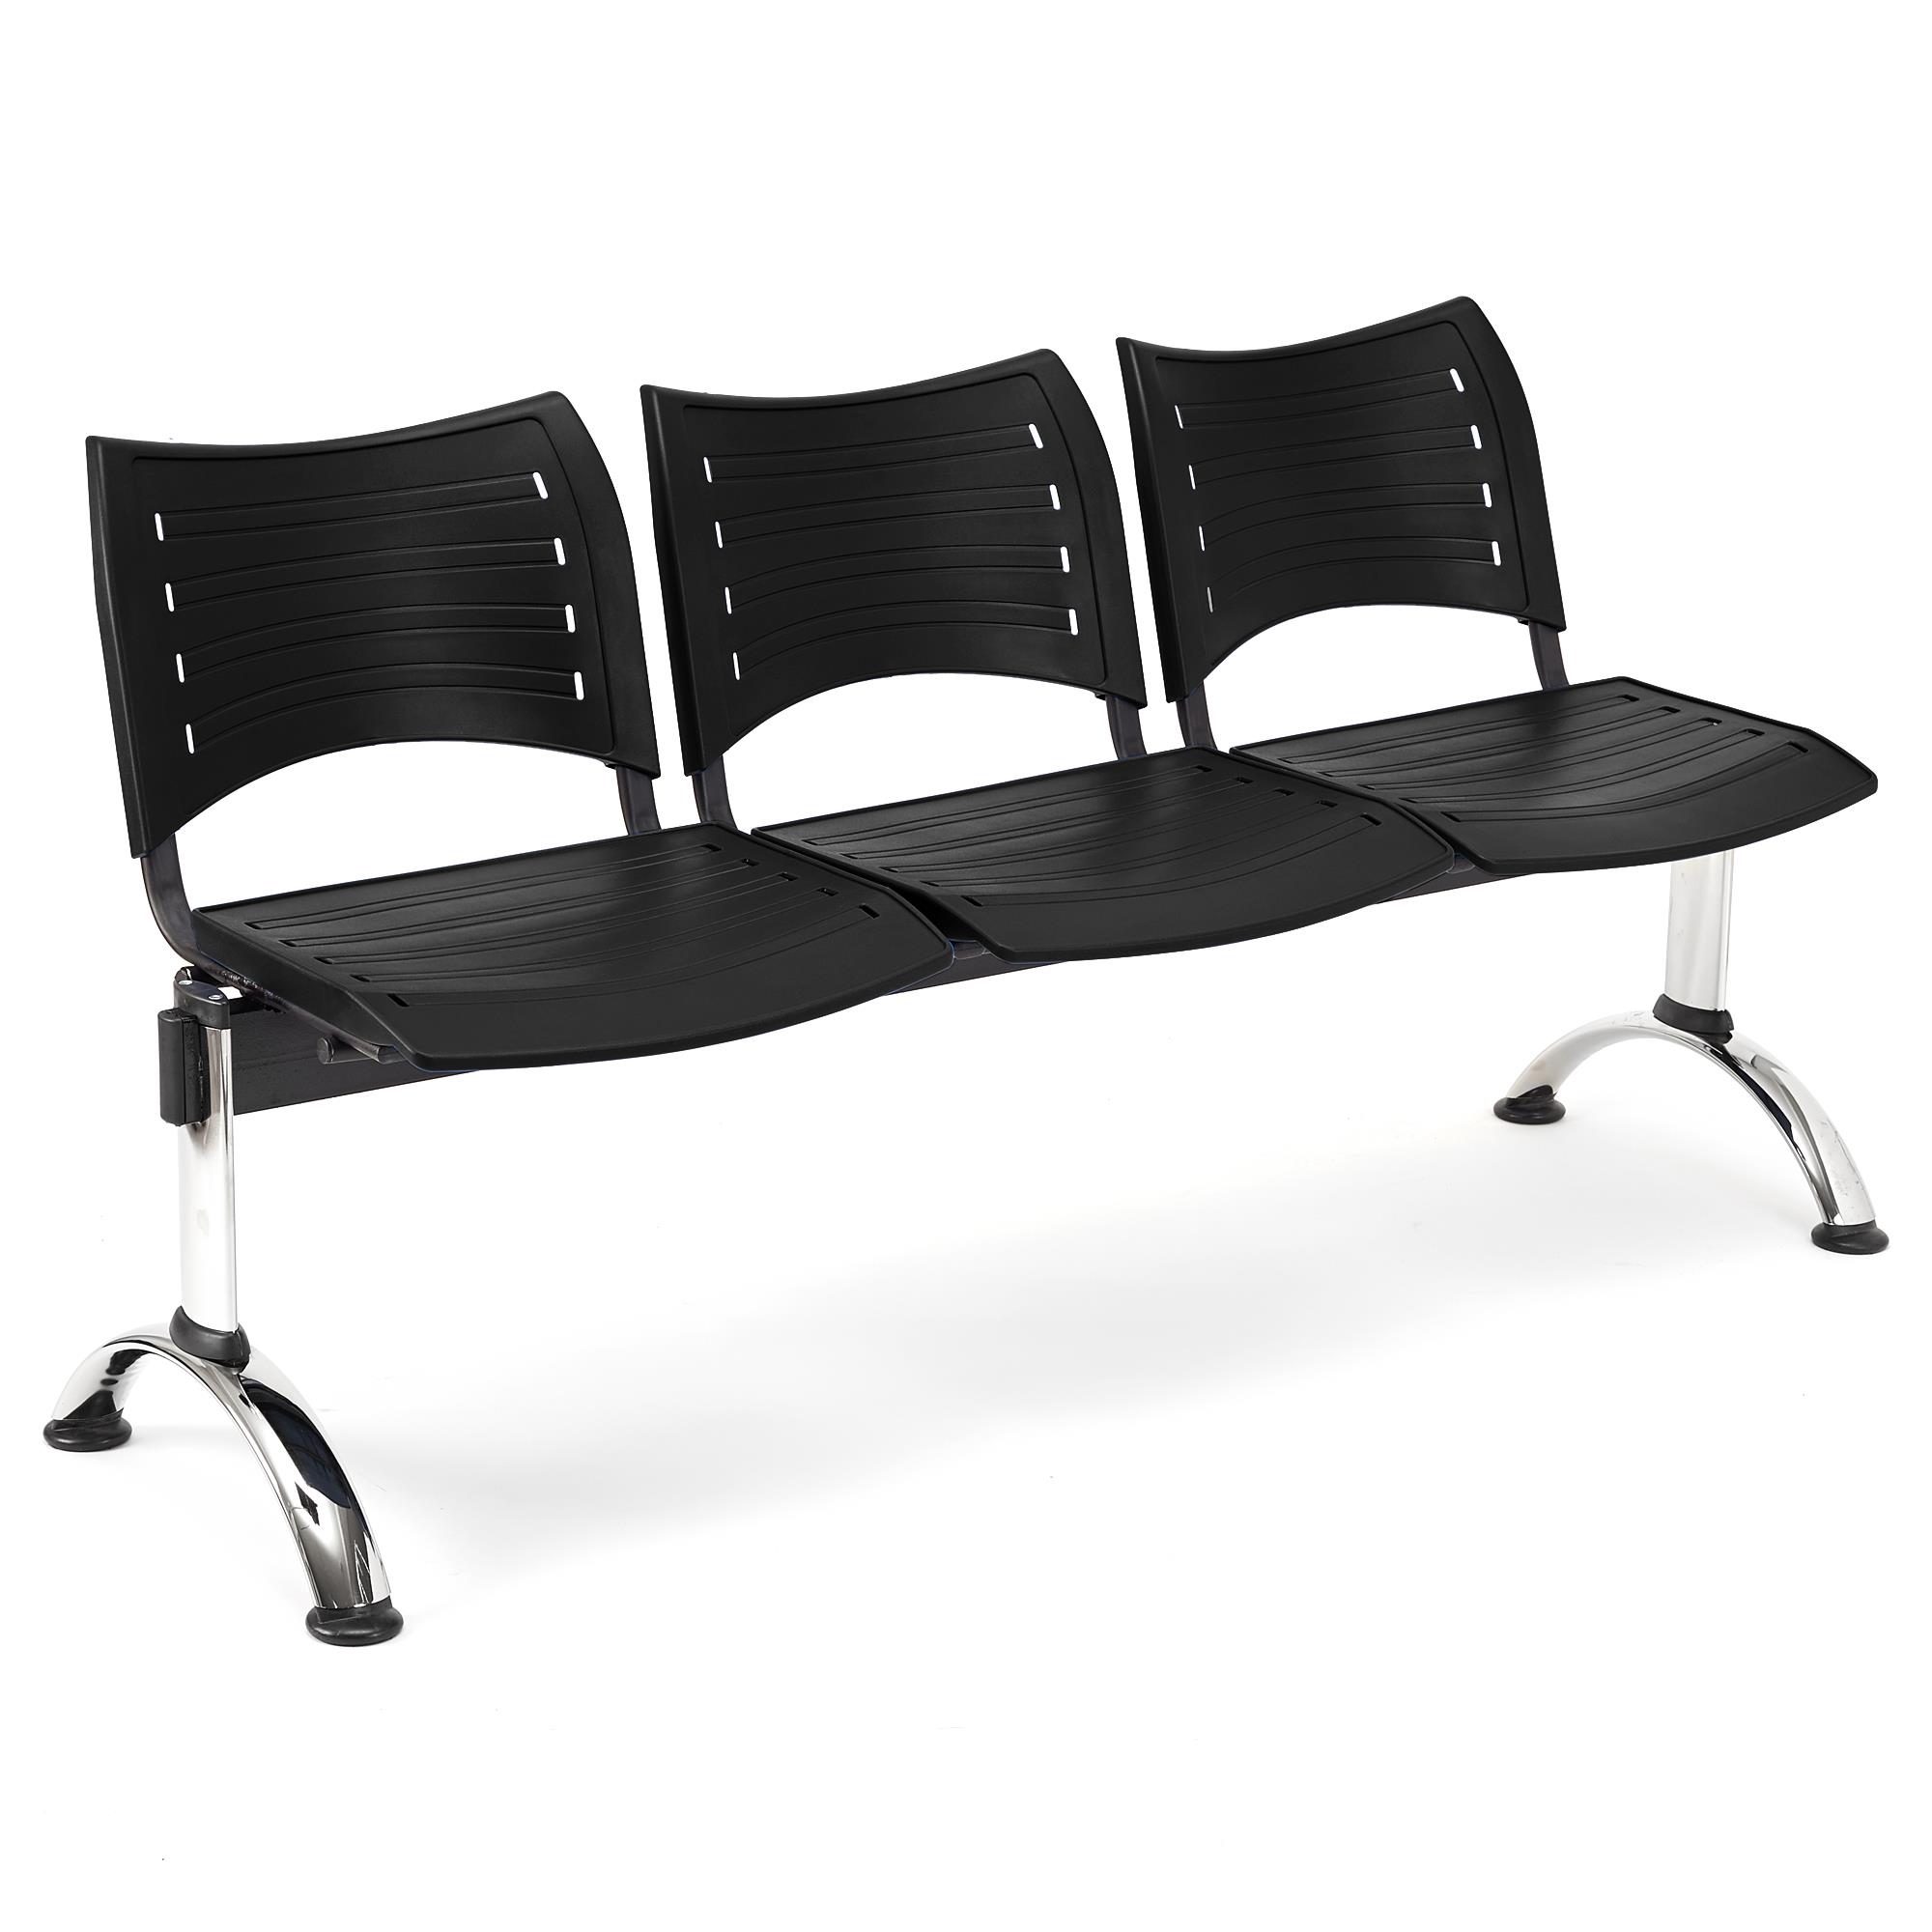 Wartebank ELVA 3-Sitzer, Metallgestell, Kunststoff, Farbe Schwarz